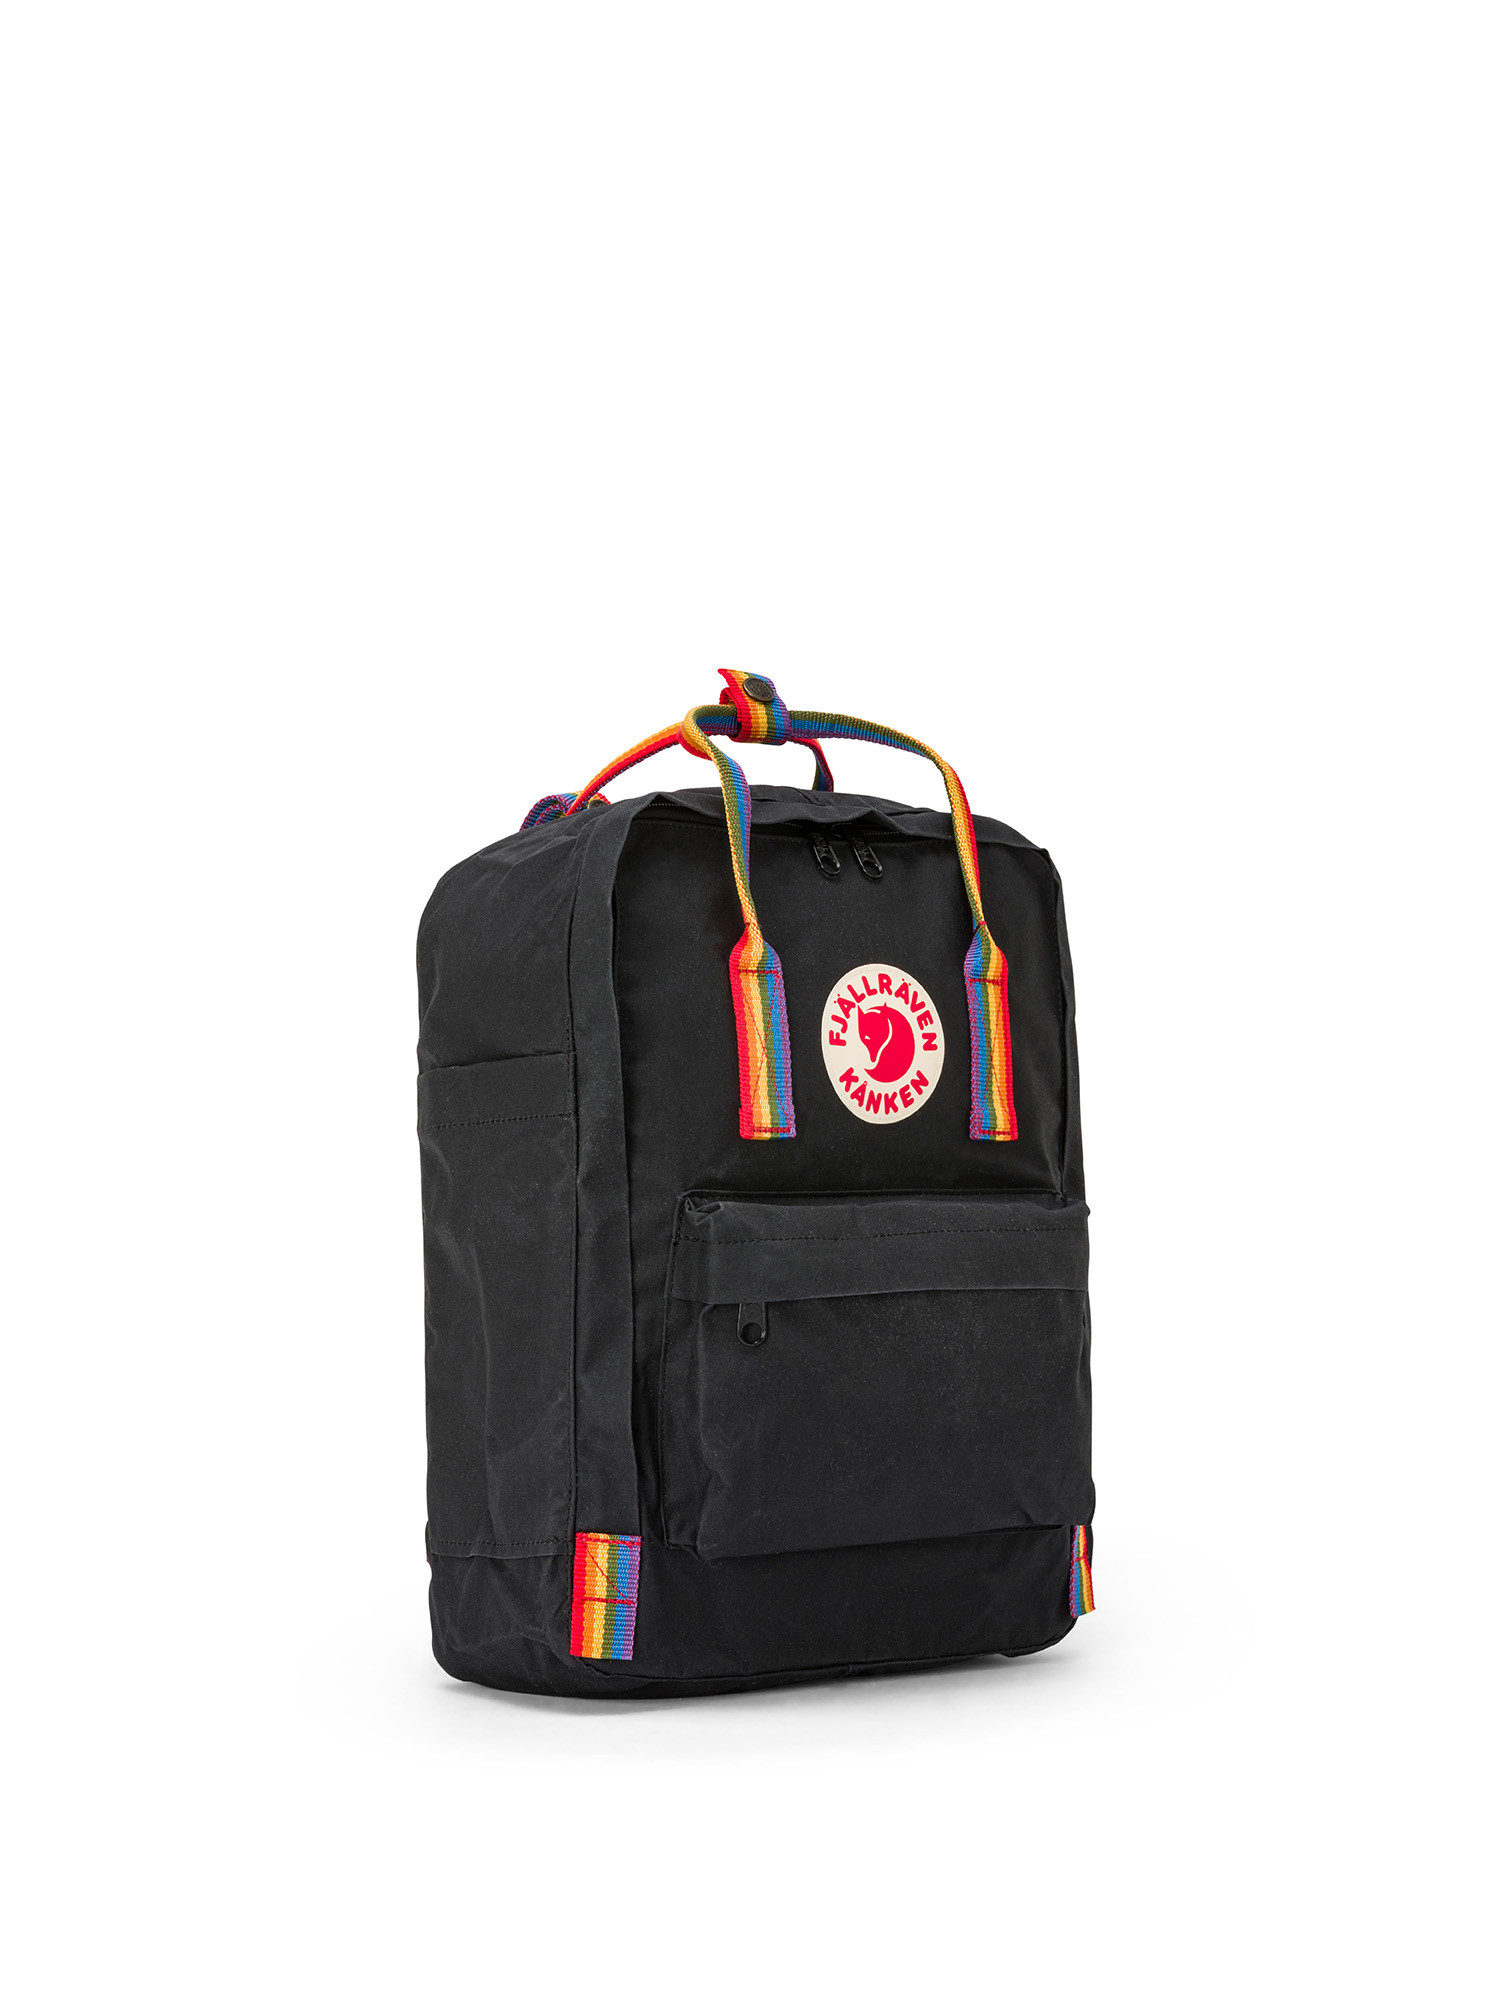 Fjallraven - Kanken Rainbow backpack, Black, large image number 1